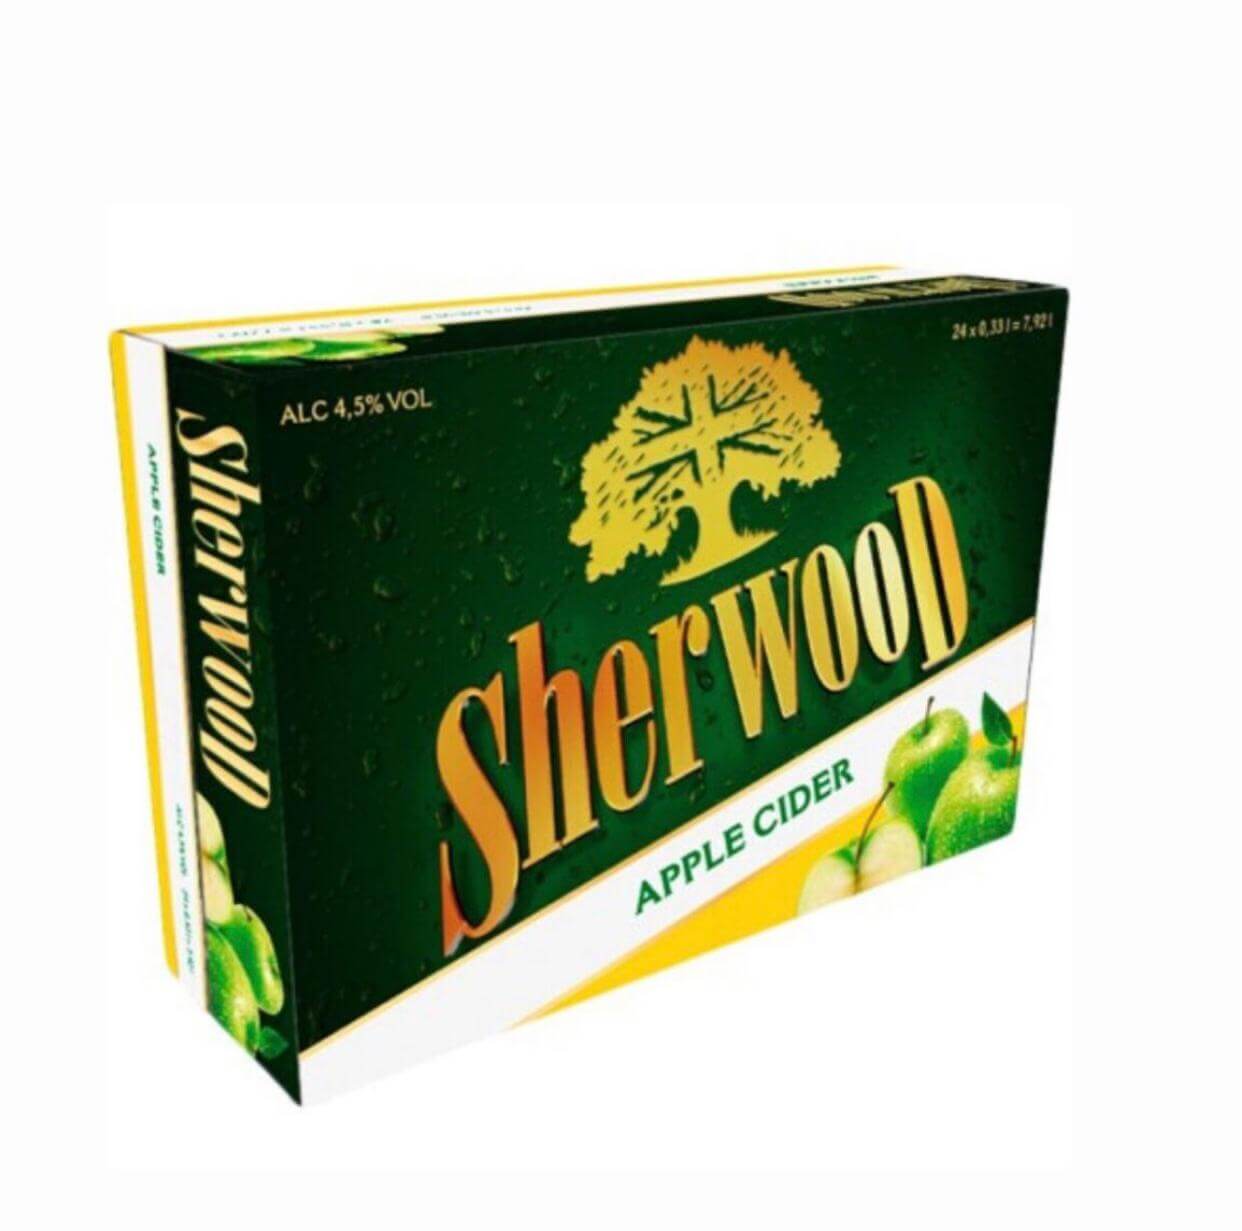 SHERWOOD Apple Cider 24x33cl